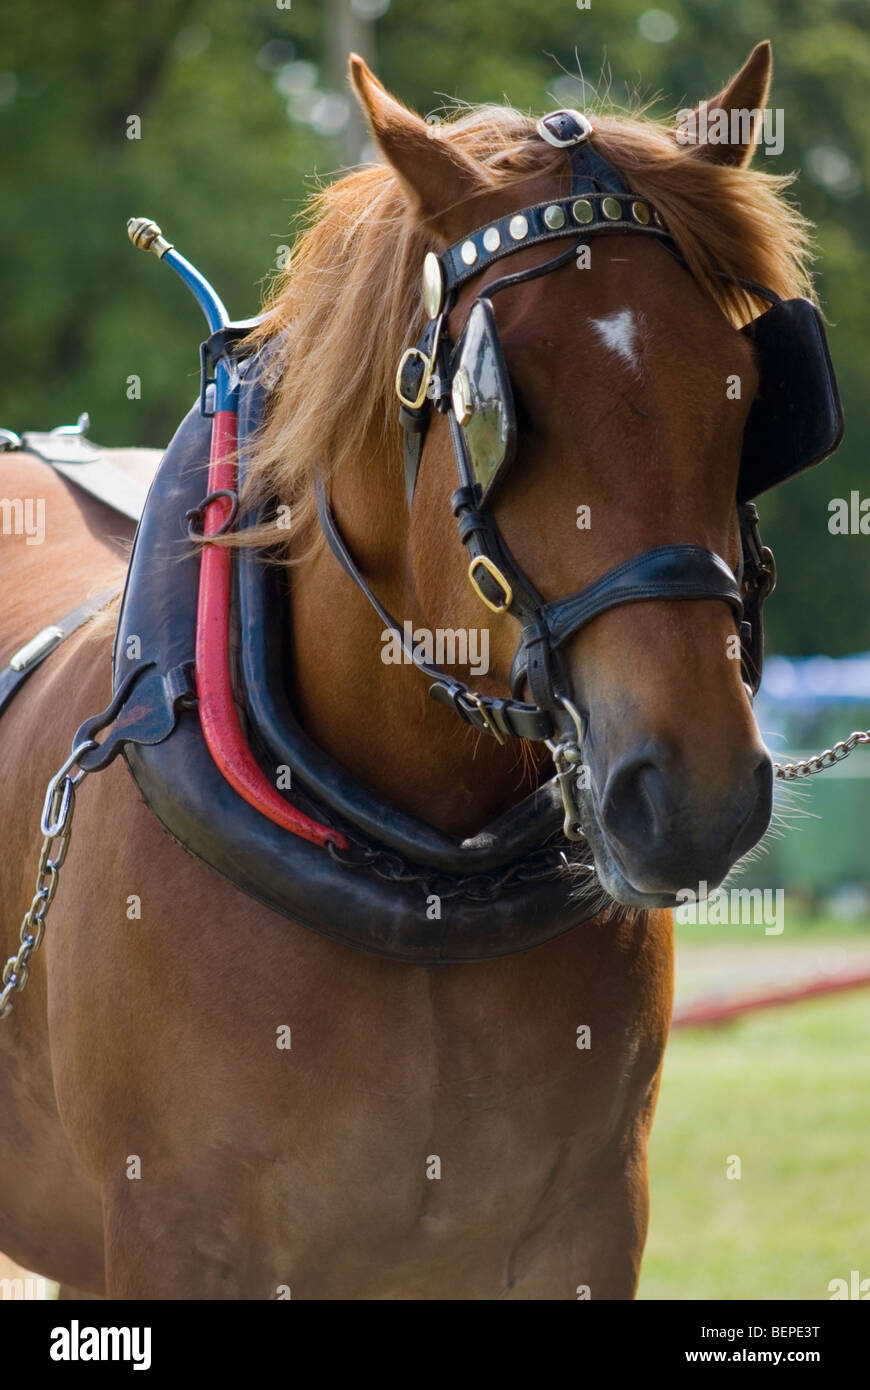 Suffolk Punch Horse montrant des oeillères bride et collier Banque D'Images